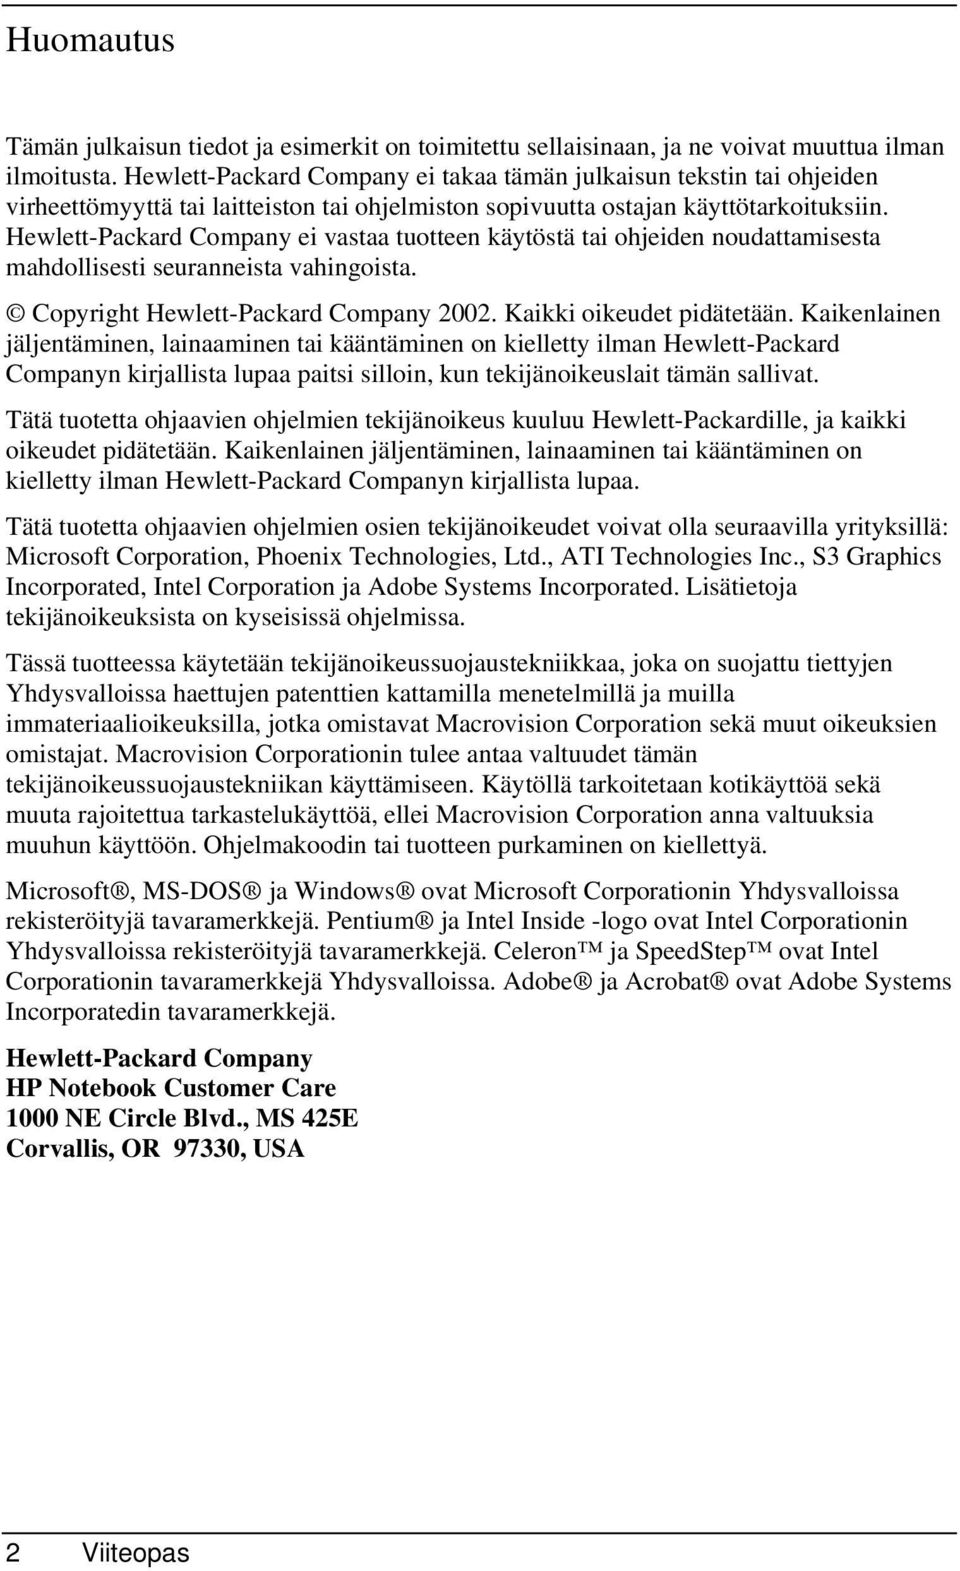 Hewlett-Packard Company ei vastaa tuotteen käytöstä tai ohjeiden noudattamisesta mahdollisesti seuranneista vahingoista. Copyright Hewlett-Packard Company 2002. Kaikki oikeudet pidätetään.